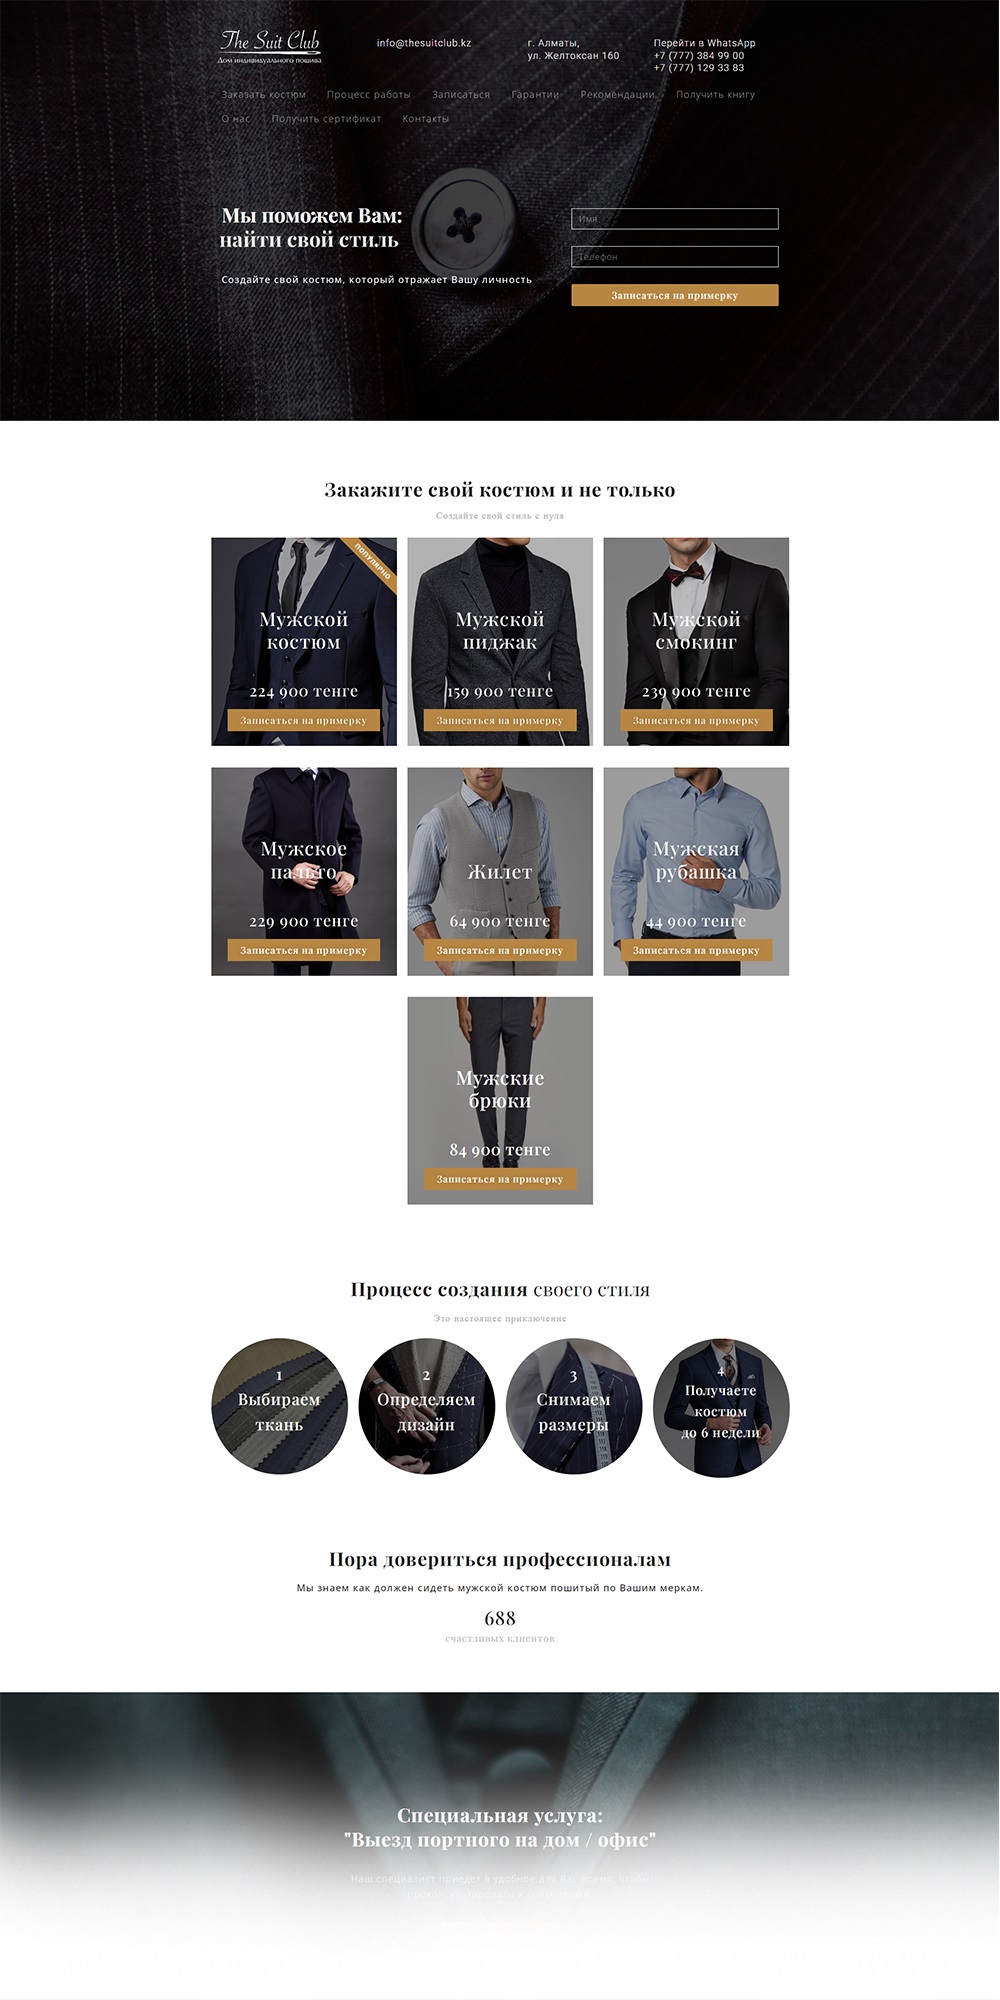 рекламные услуги seo-продвижение создание разработка сайта казахстан настройка на алматы нур-султан астана шымкент